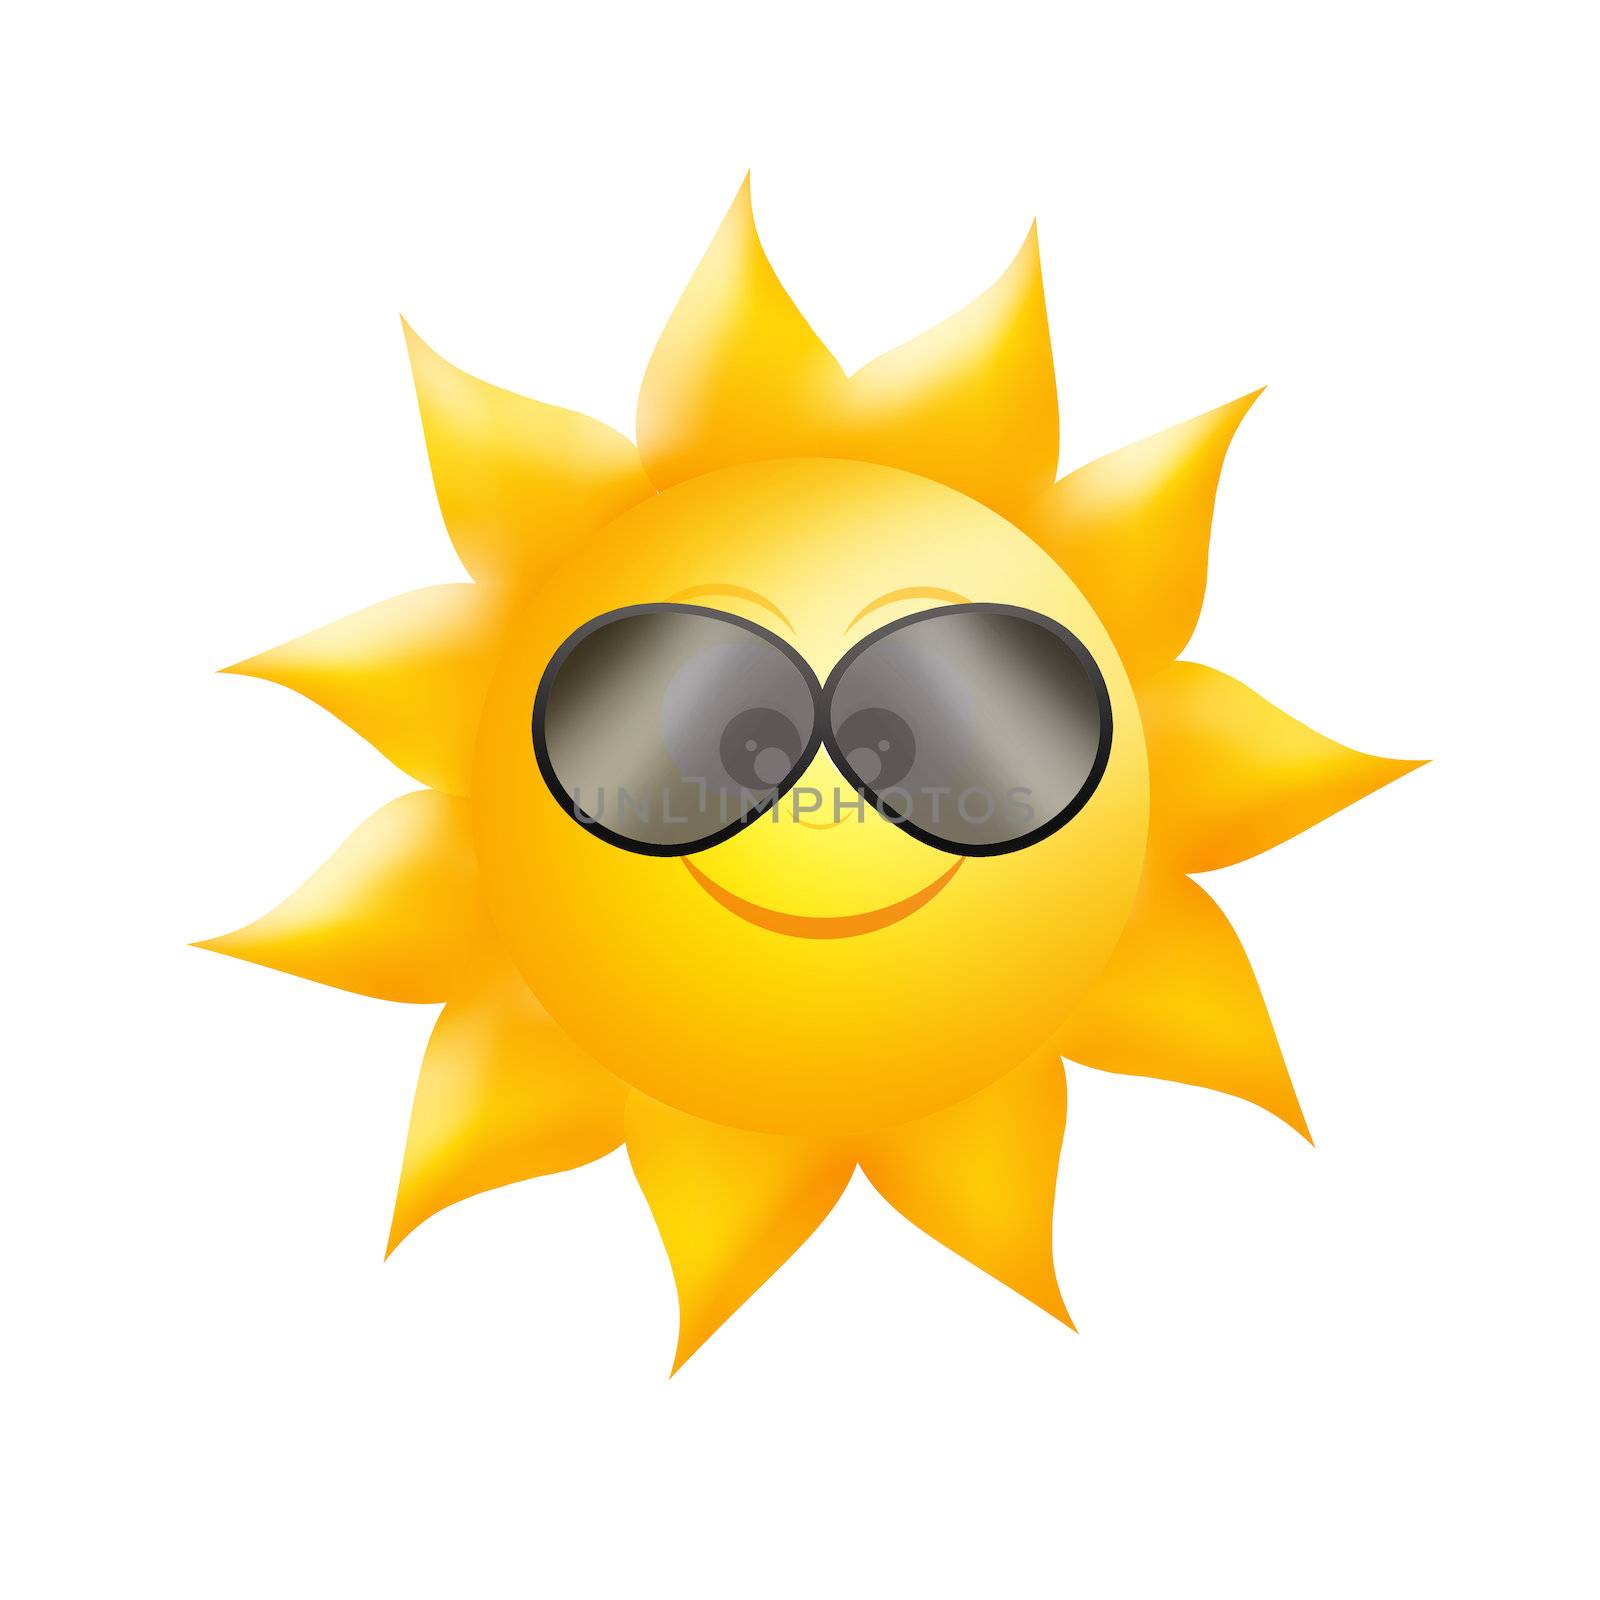 sun with sunglasses icon